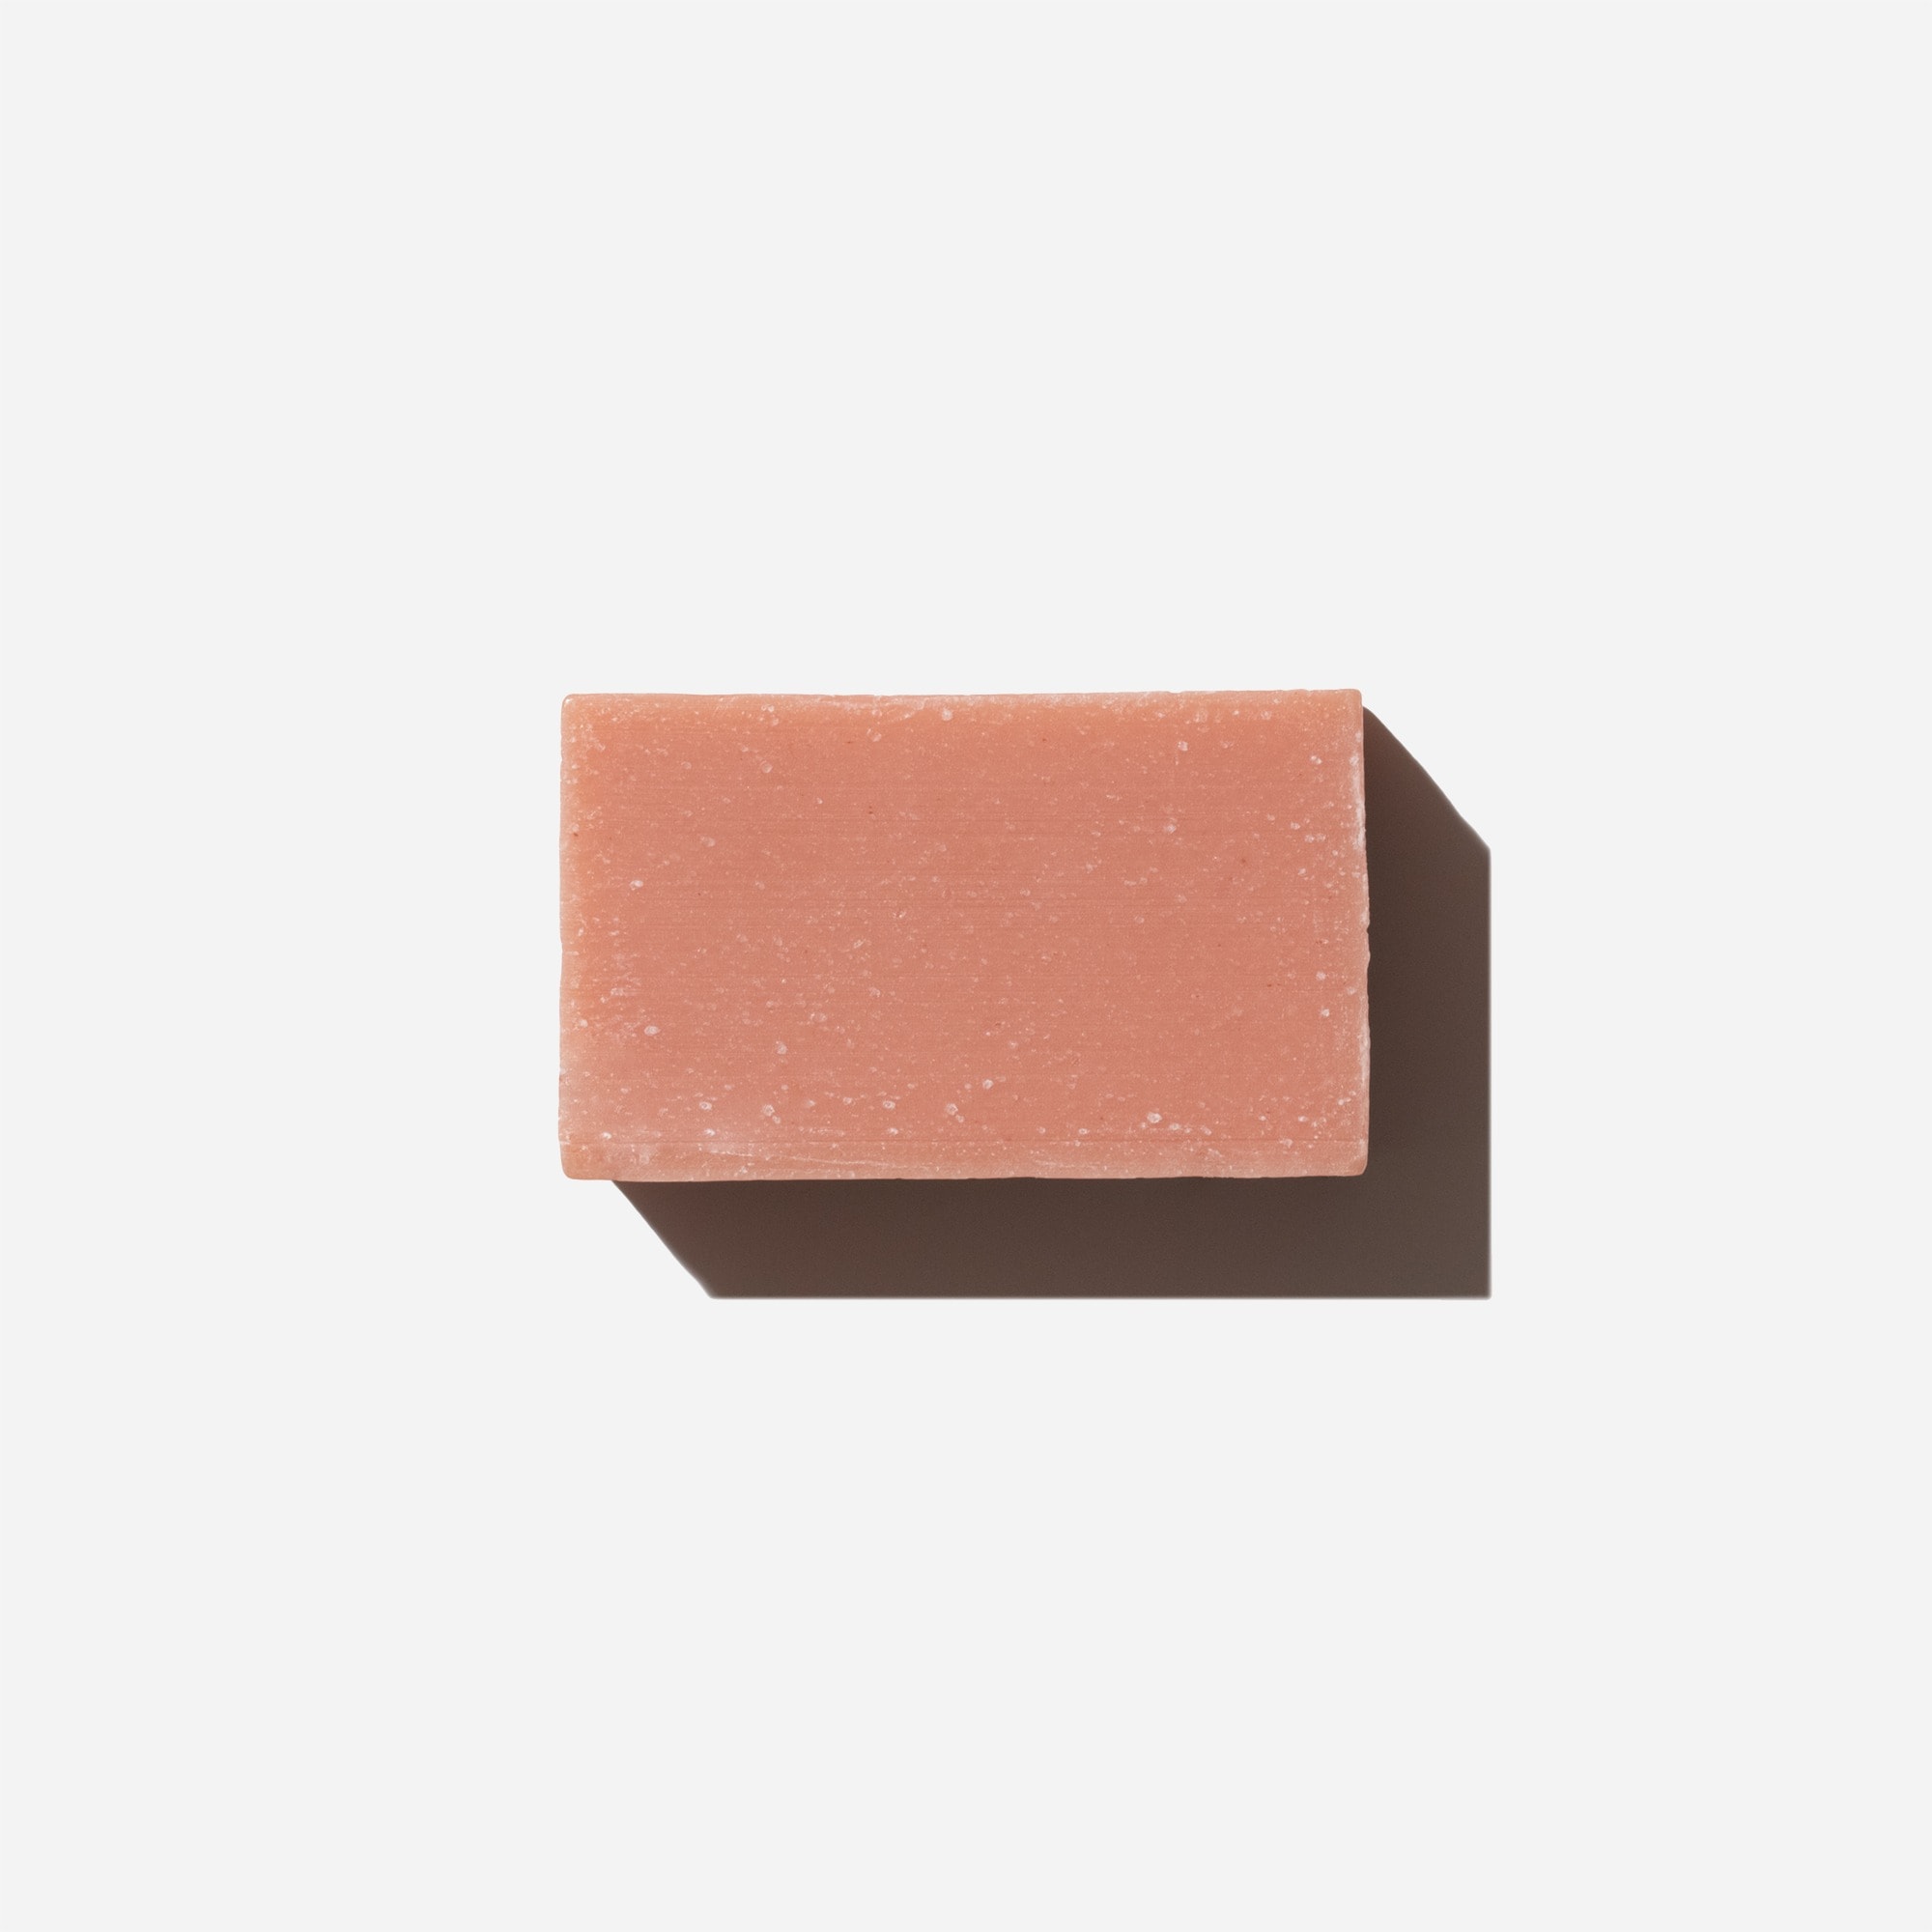  Sade Baron la rose sensitive pink-clay bar soap